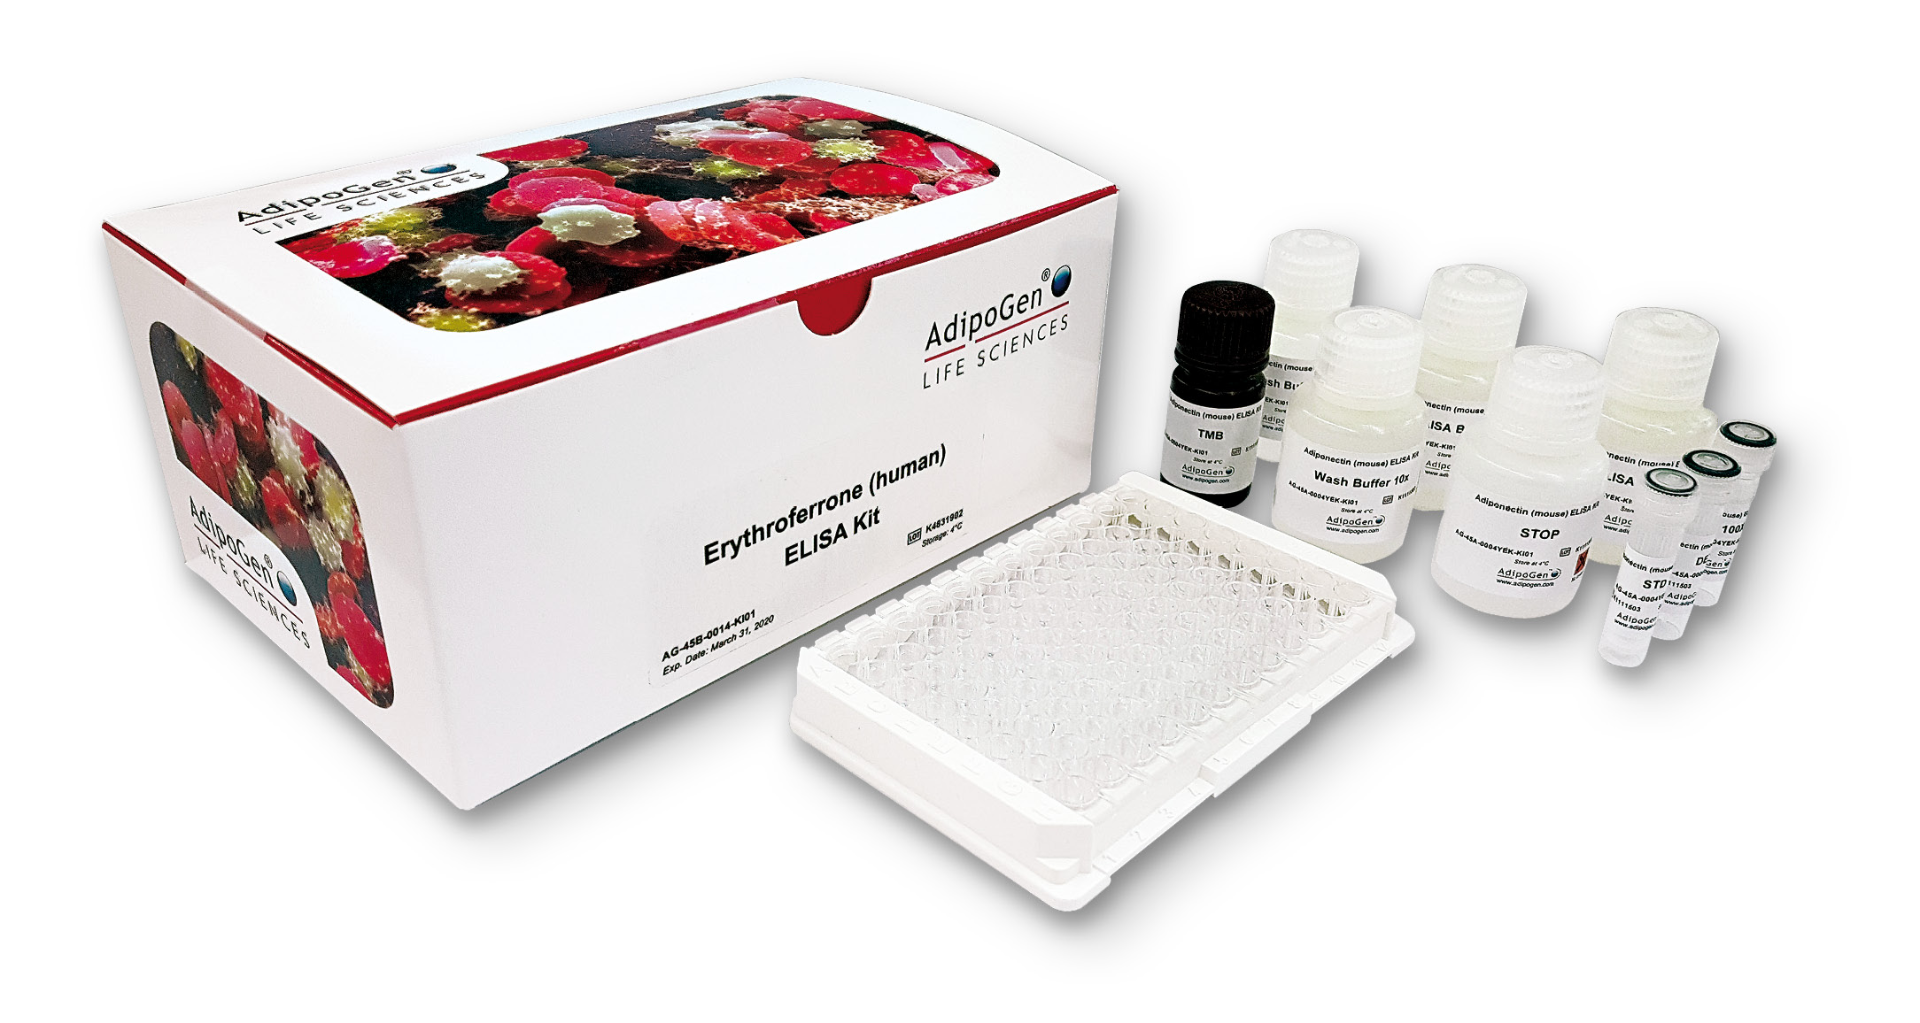 Erythroferrone（人）ELISA试剂盒                              市面上为数不多的特异性＆灵敏检测